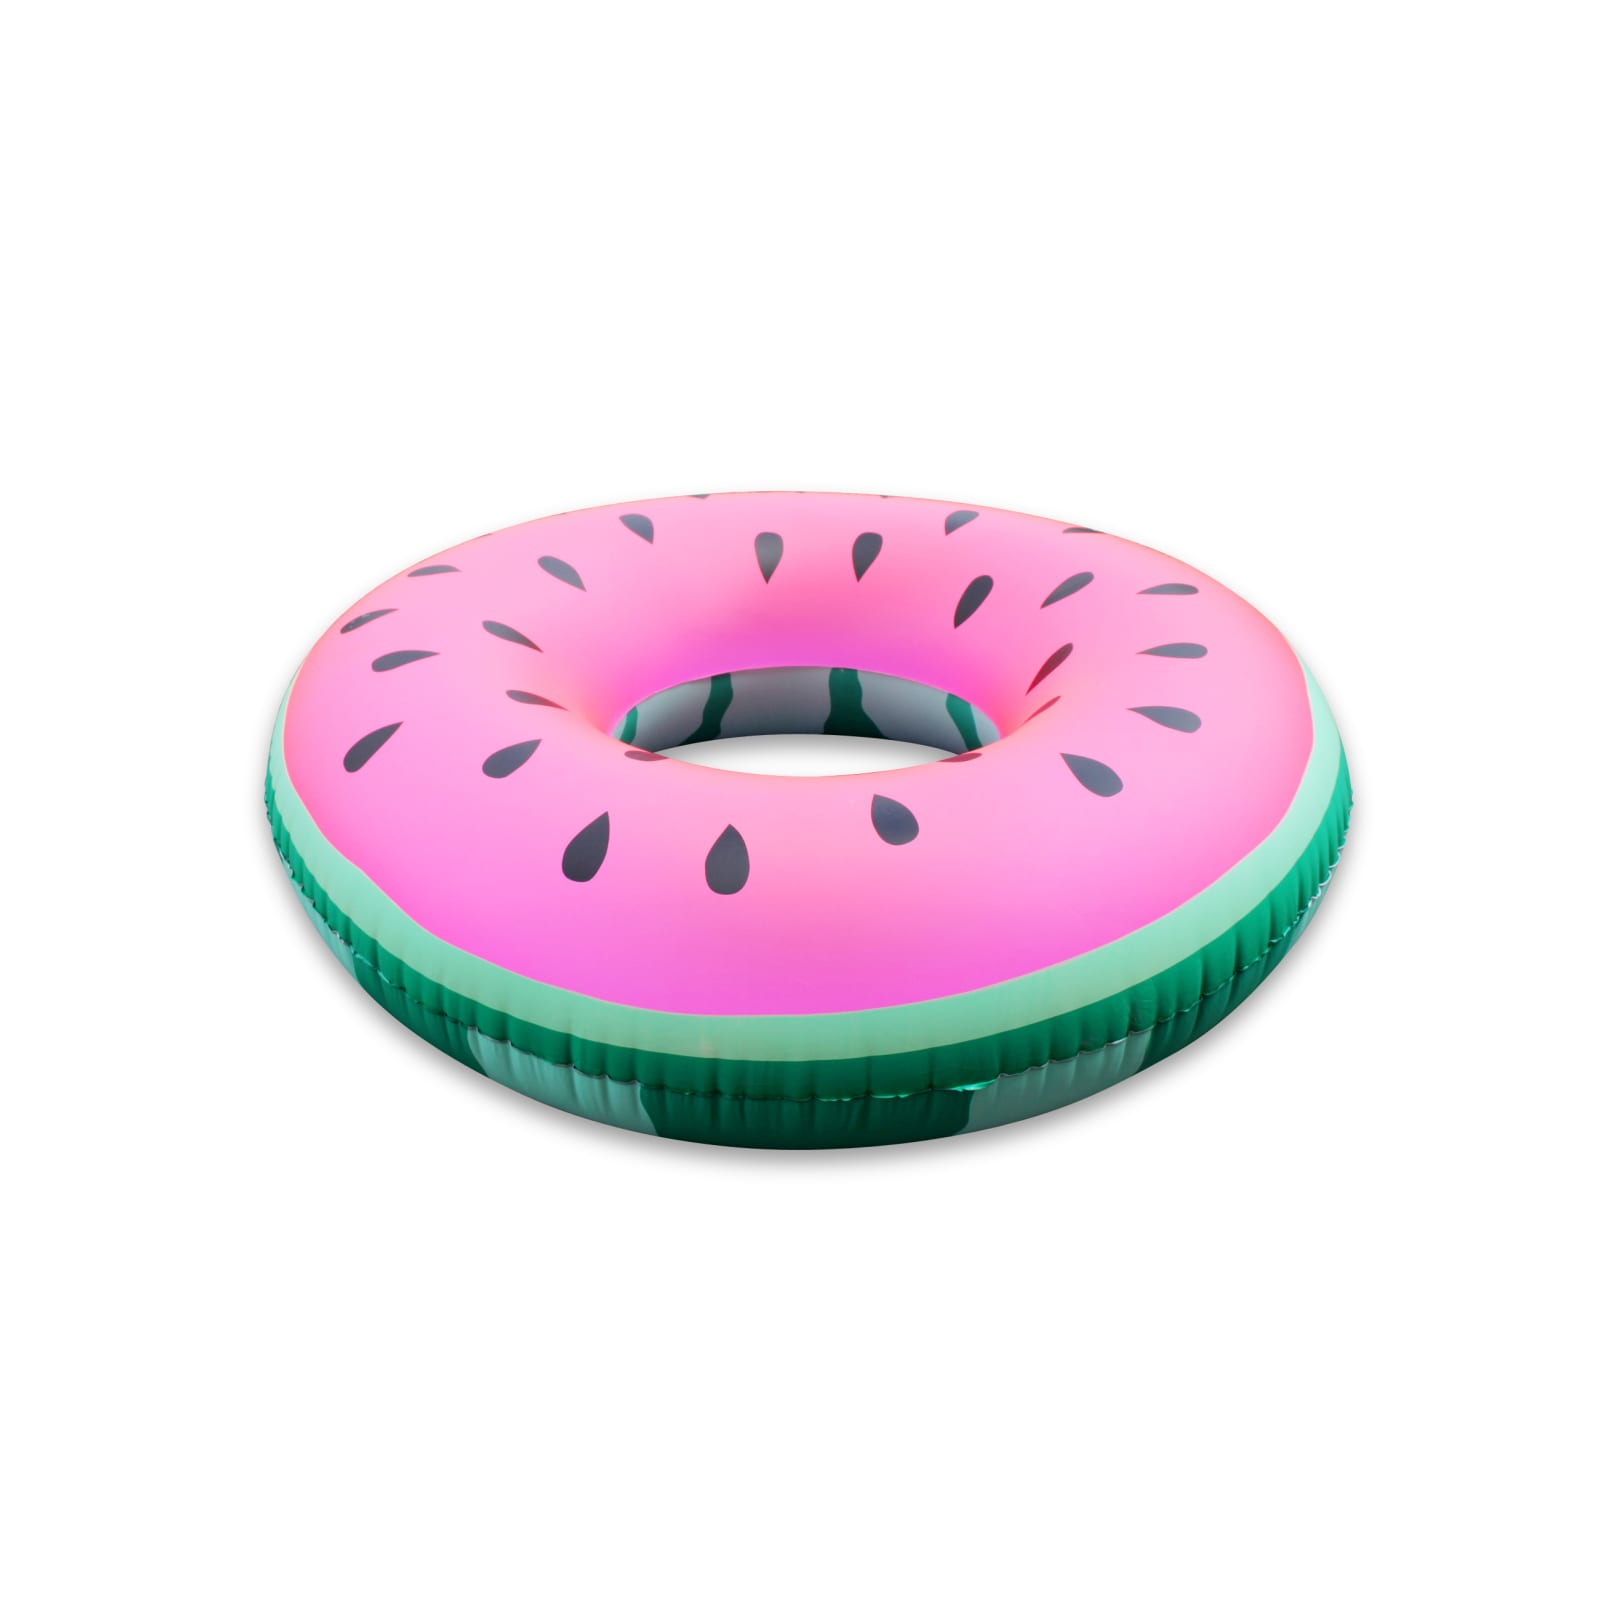 Watermelon Float